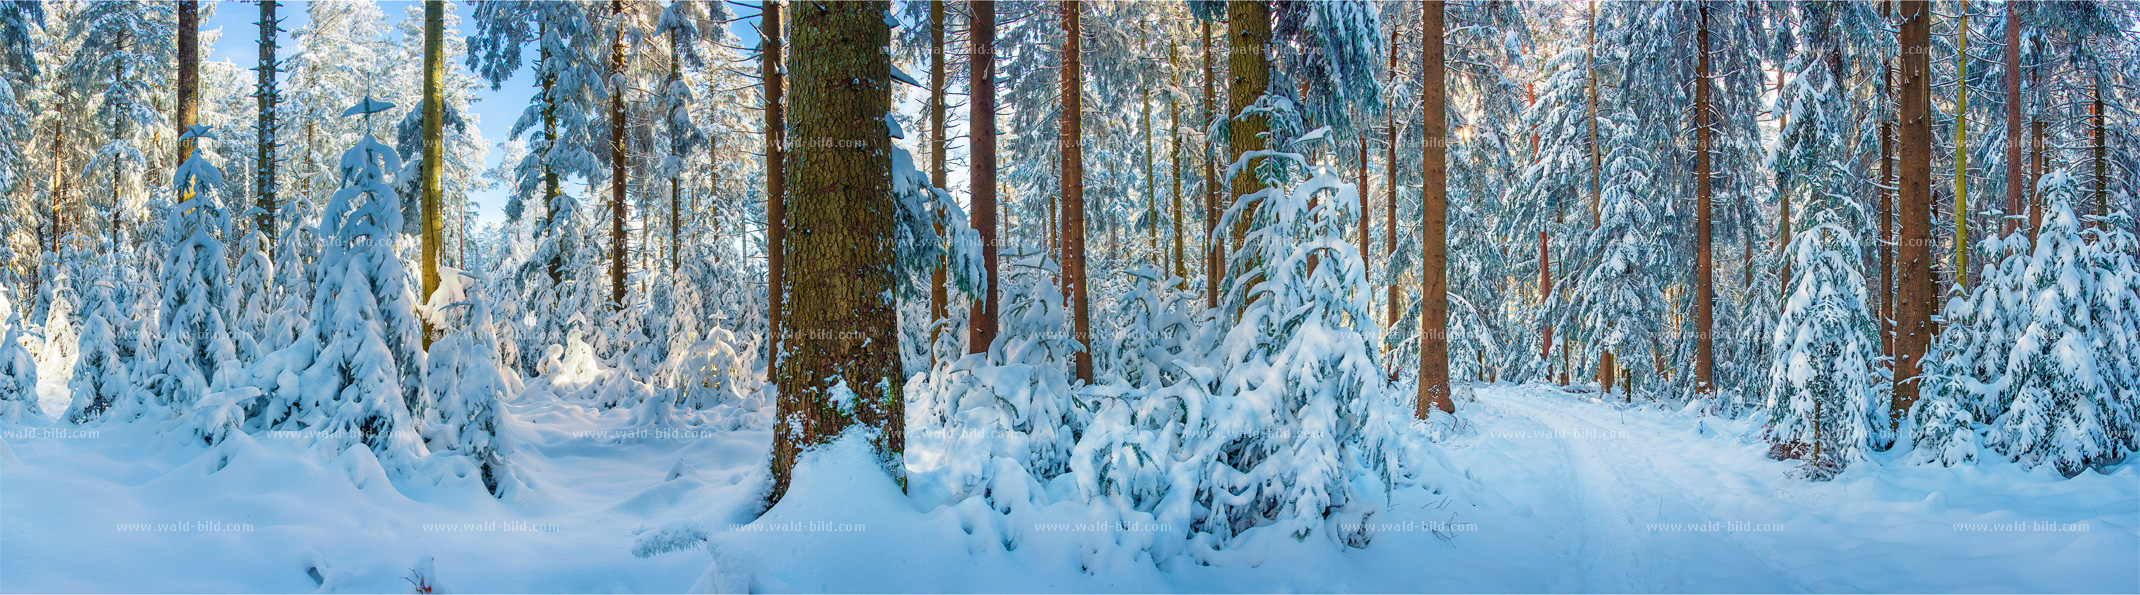 Foto Schnee Wald gross